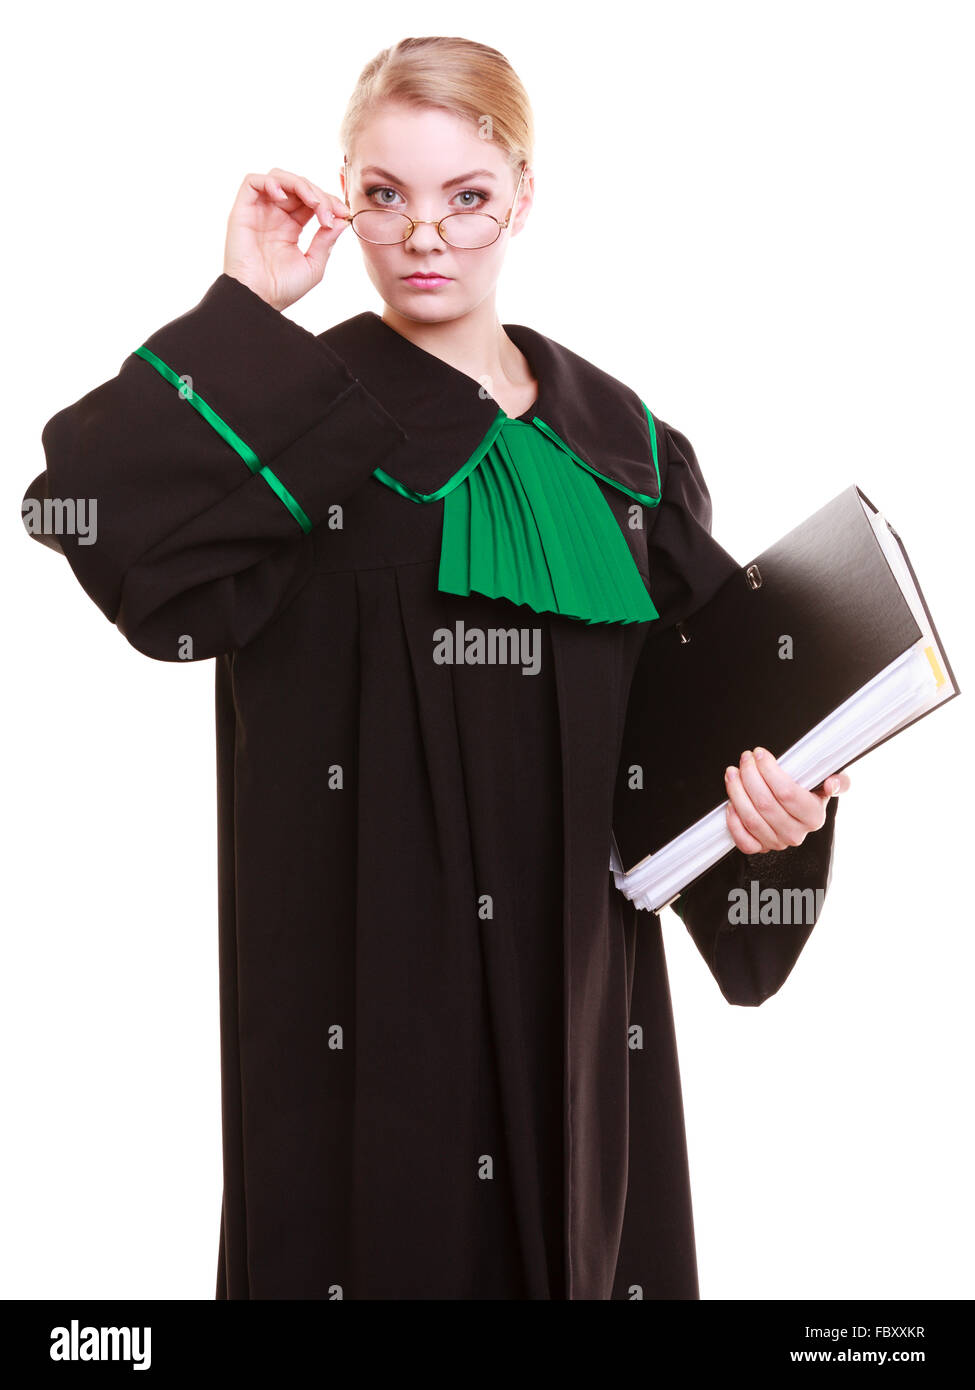 Gericht oder Gerechtigkeit Begriff. Junge Frau Rechtsanwalt Anwalt trägt  klassische Polnisch (Polen) schwarz grünes Kleid mit Datei-Ordner oder d  Stockfotografie - Alamy